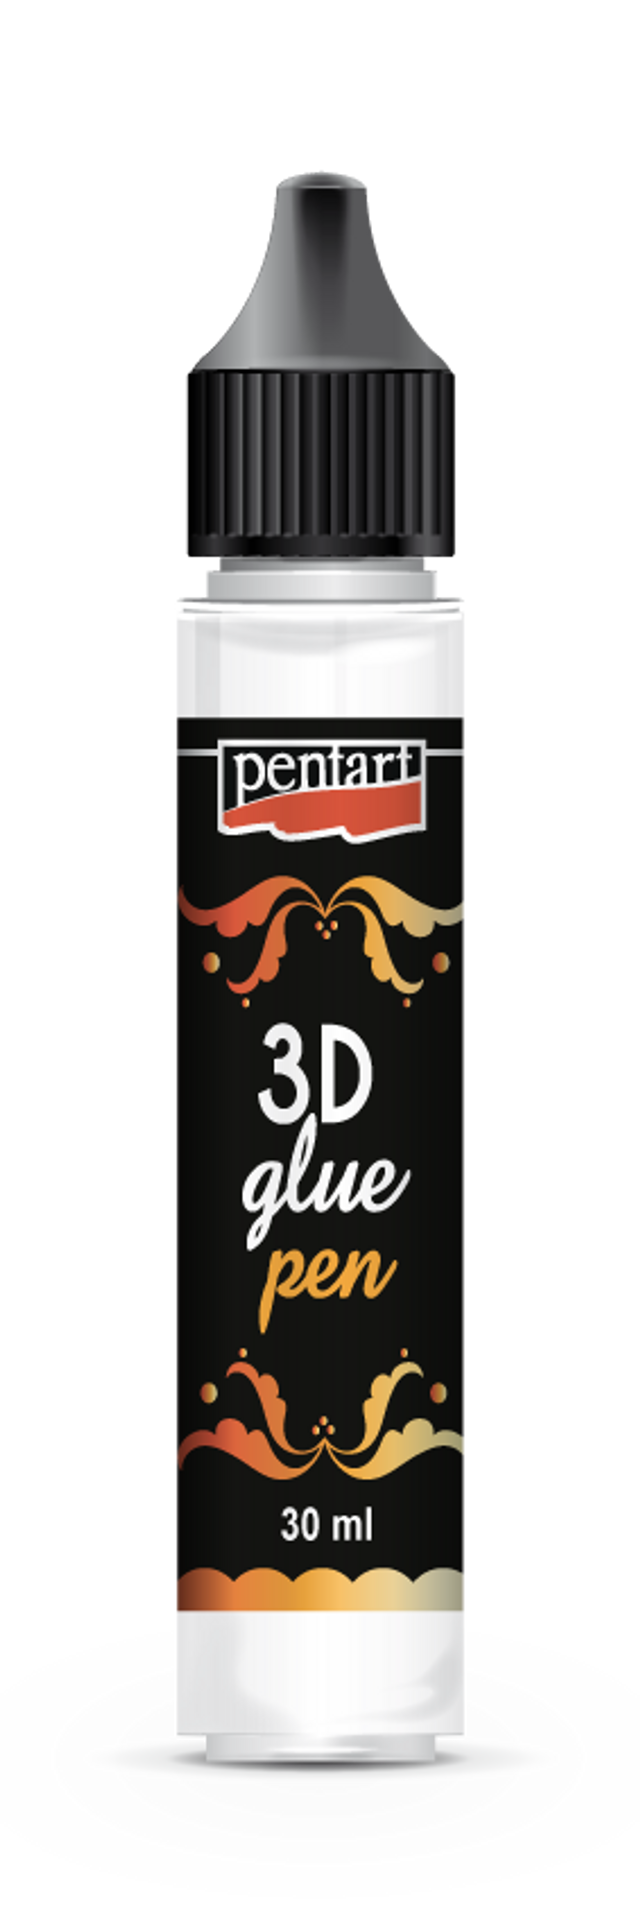 Pentart 3D Glue Pen - Decoupage Queen